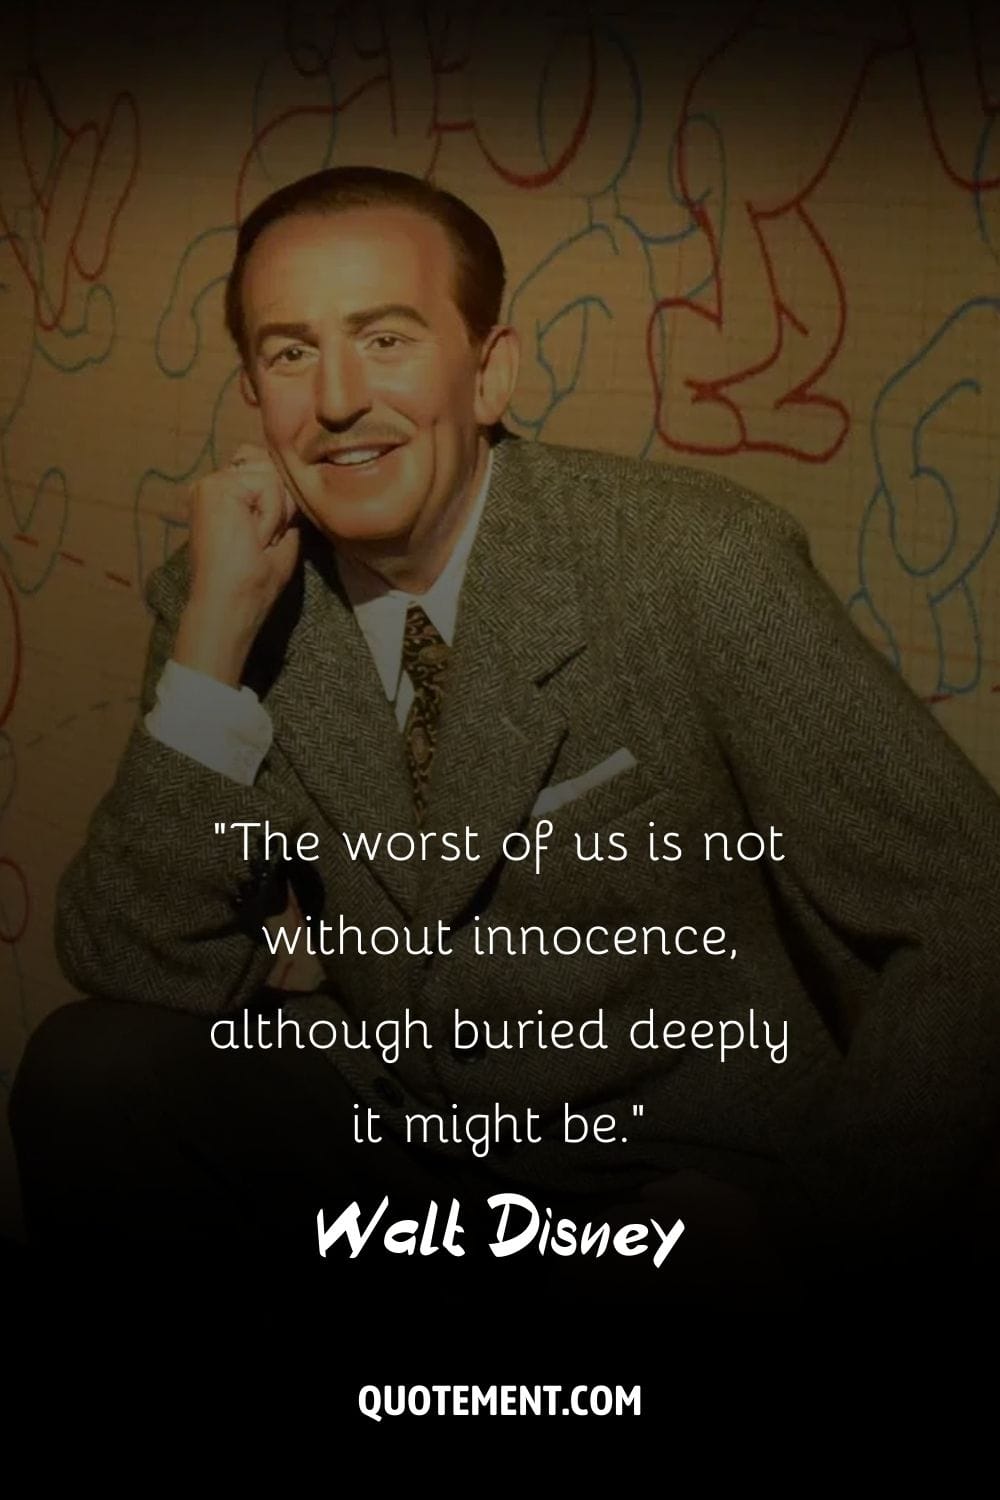 Imagen de la expresión alegre de Walt Disney.